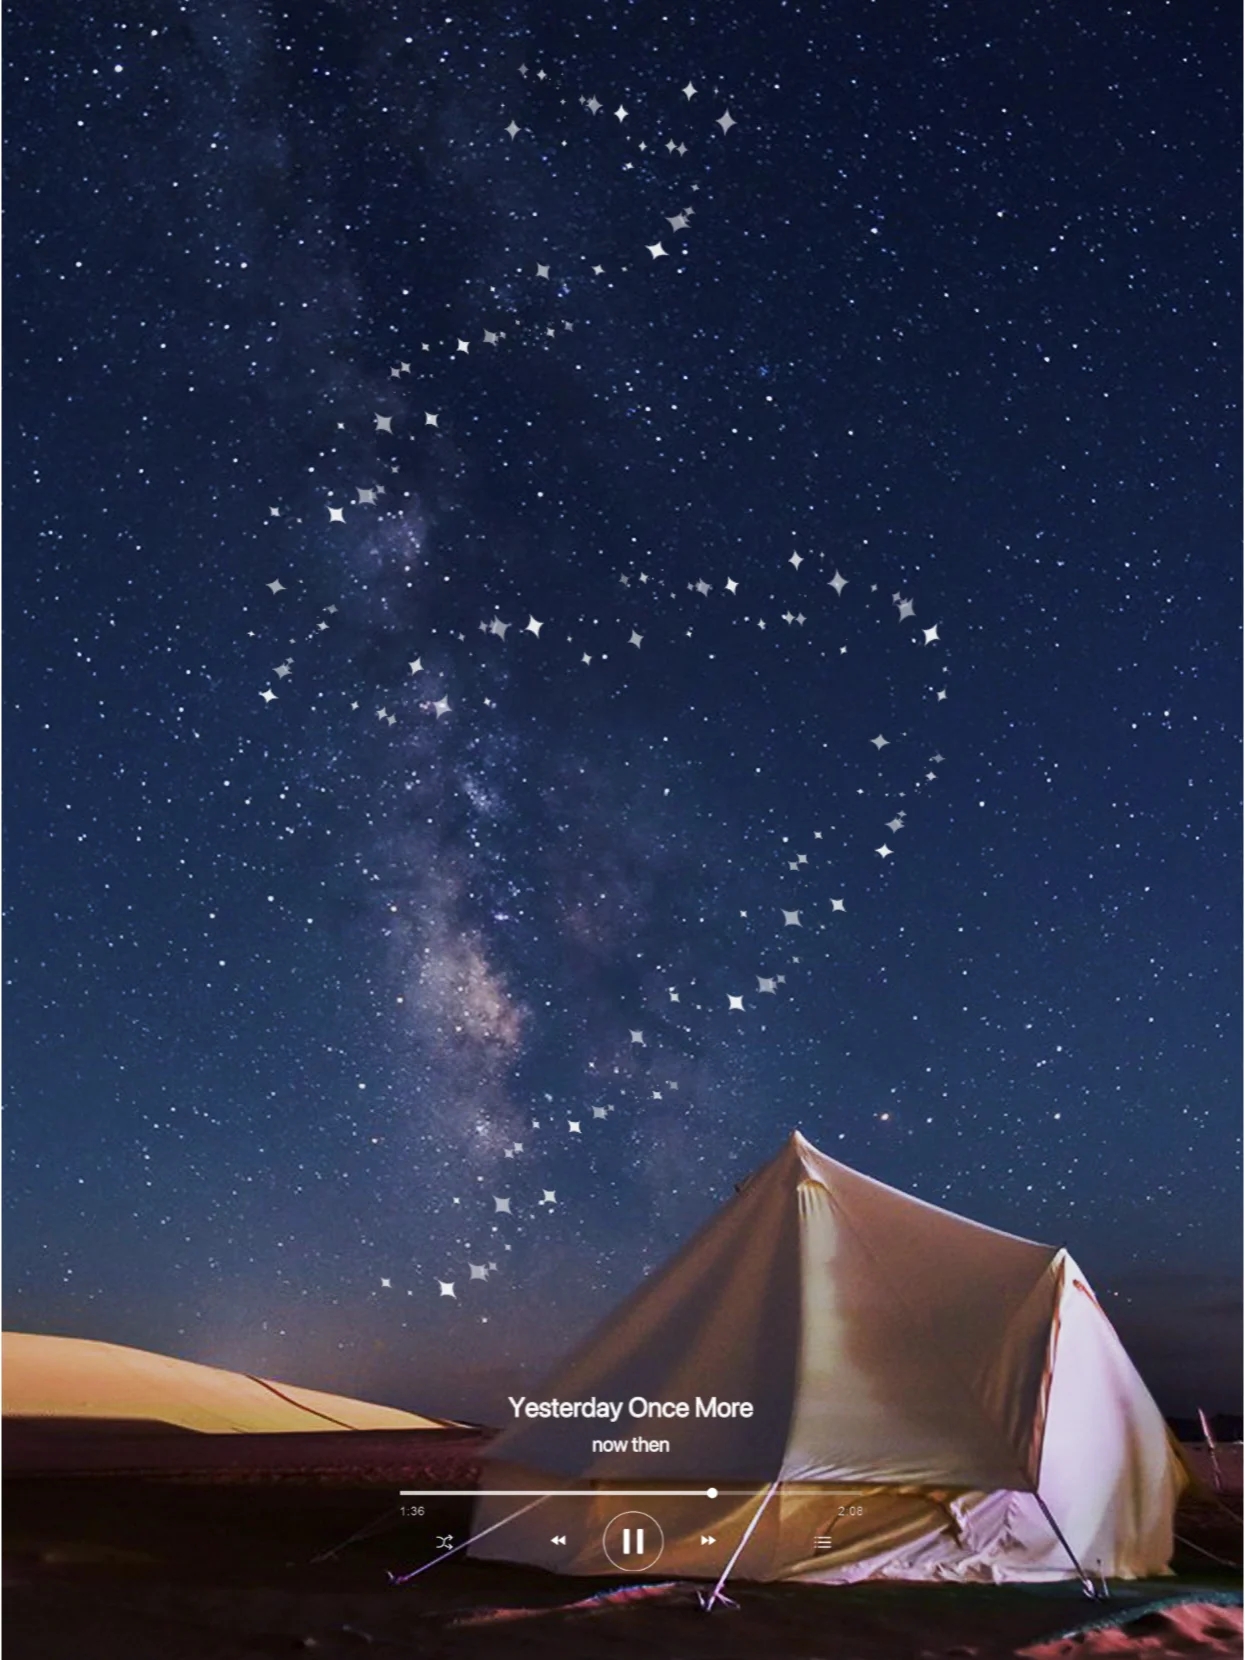 亲子夏夜的星辰奇遇✨来腾格里看星空吧|||👨‍👩‍👧‍👦 在腾格里沙漠的怀抱中，搭起一顶顶梦幻的帐篷